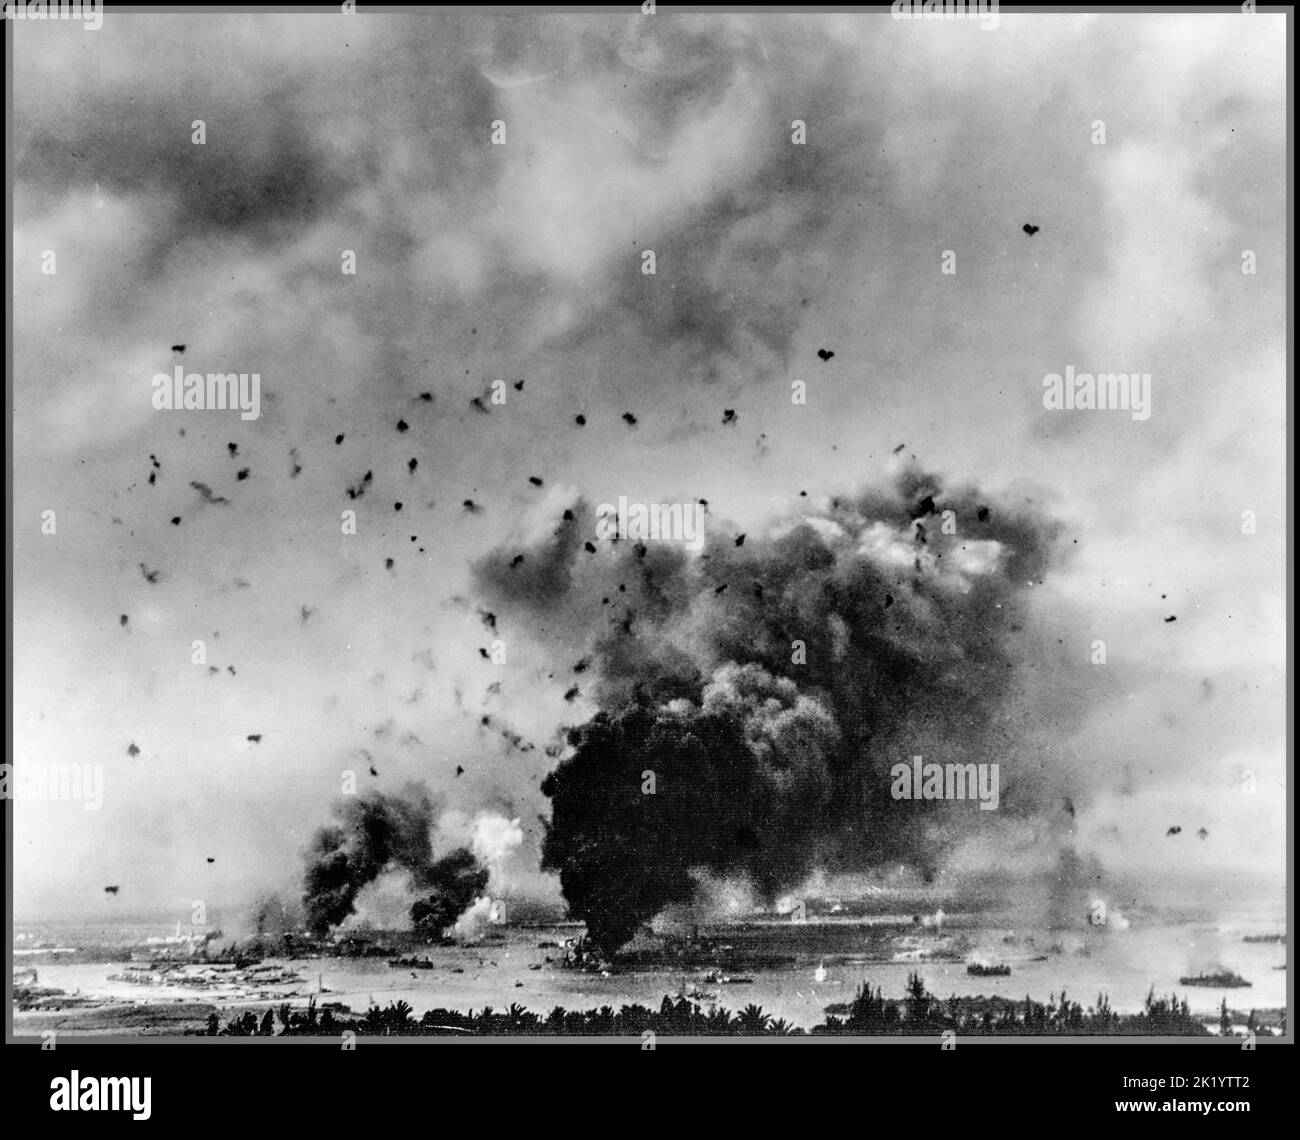 ATTAQUE DE PEARL HARBOR vue générale de l'attaque surprise japonaise avec des cutleships américains frappé et brûlant dans Pearl Harbor avec anti-incendie d'avion remplissant le ciel, pendant l'offensive japonaise tristement célèbre le 7th décembre 1941. Banque D'Images